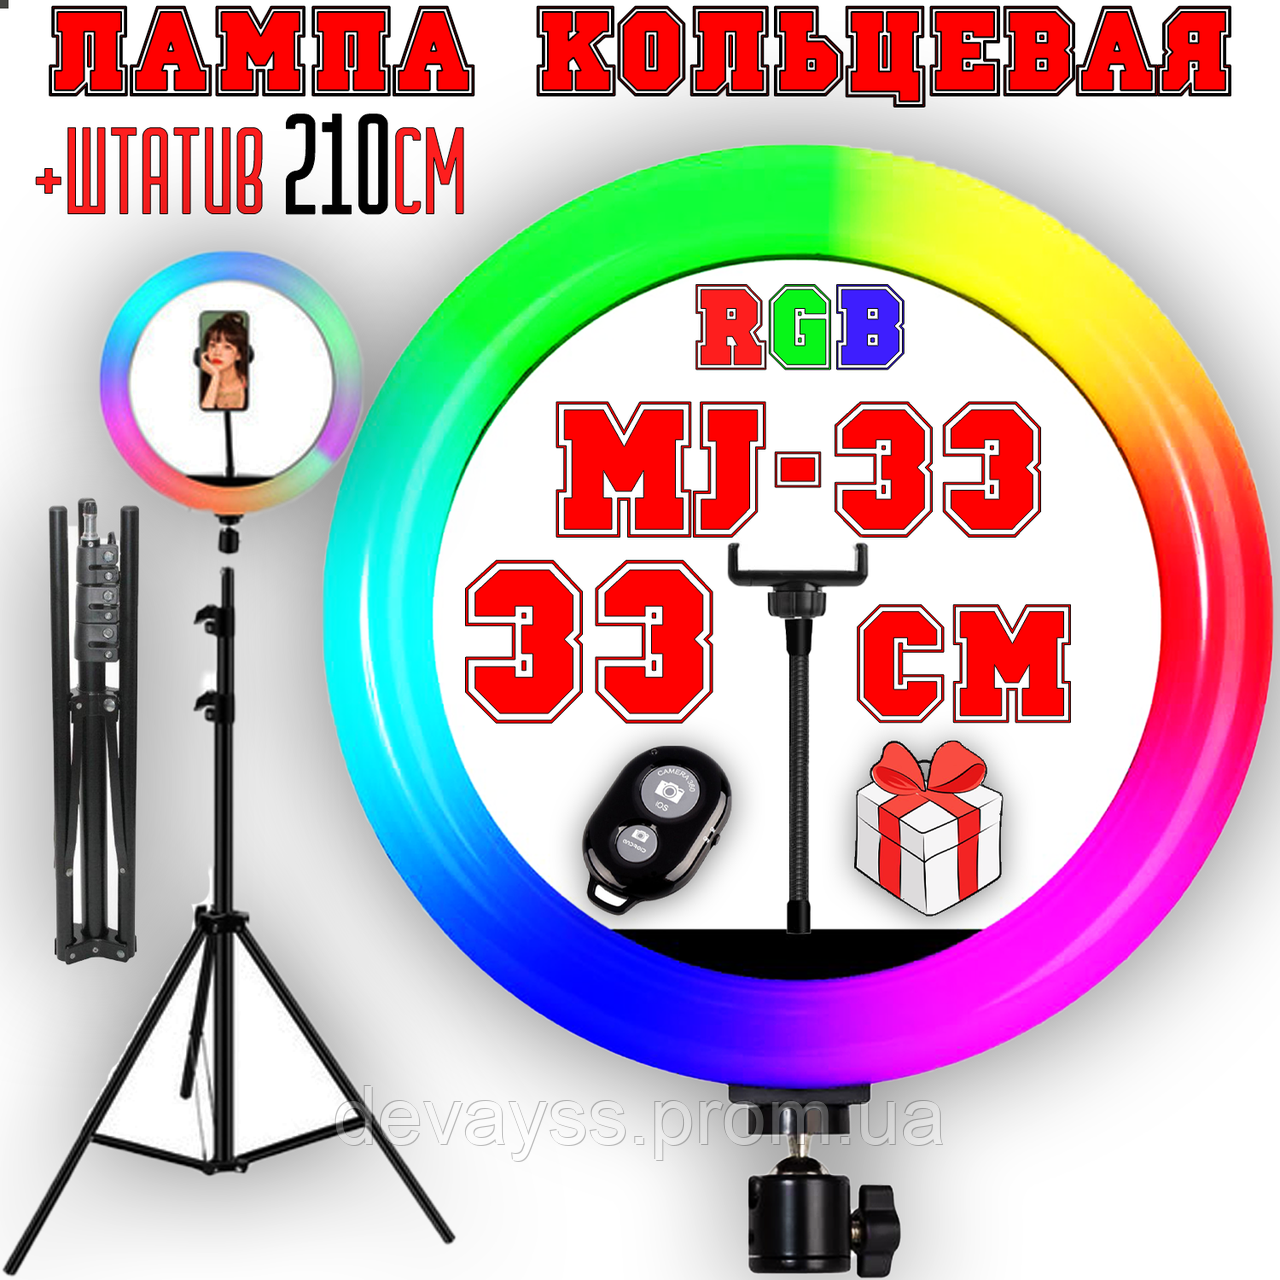 Кільцева кольорова лампа RGB LED MJ33 світлодіодна Набір 3в1 для блогера Cелфі кільце зі штативом 33 см